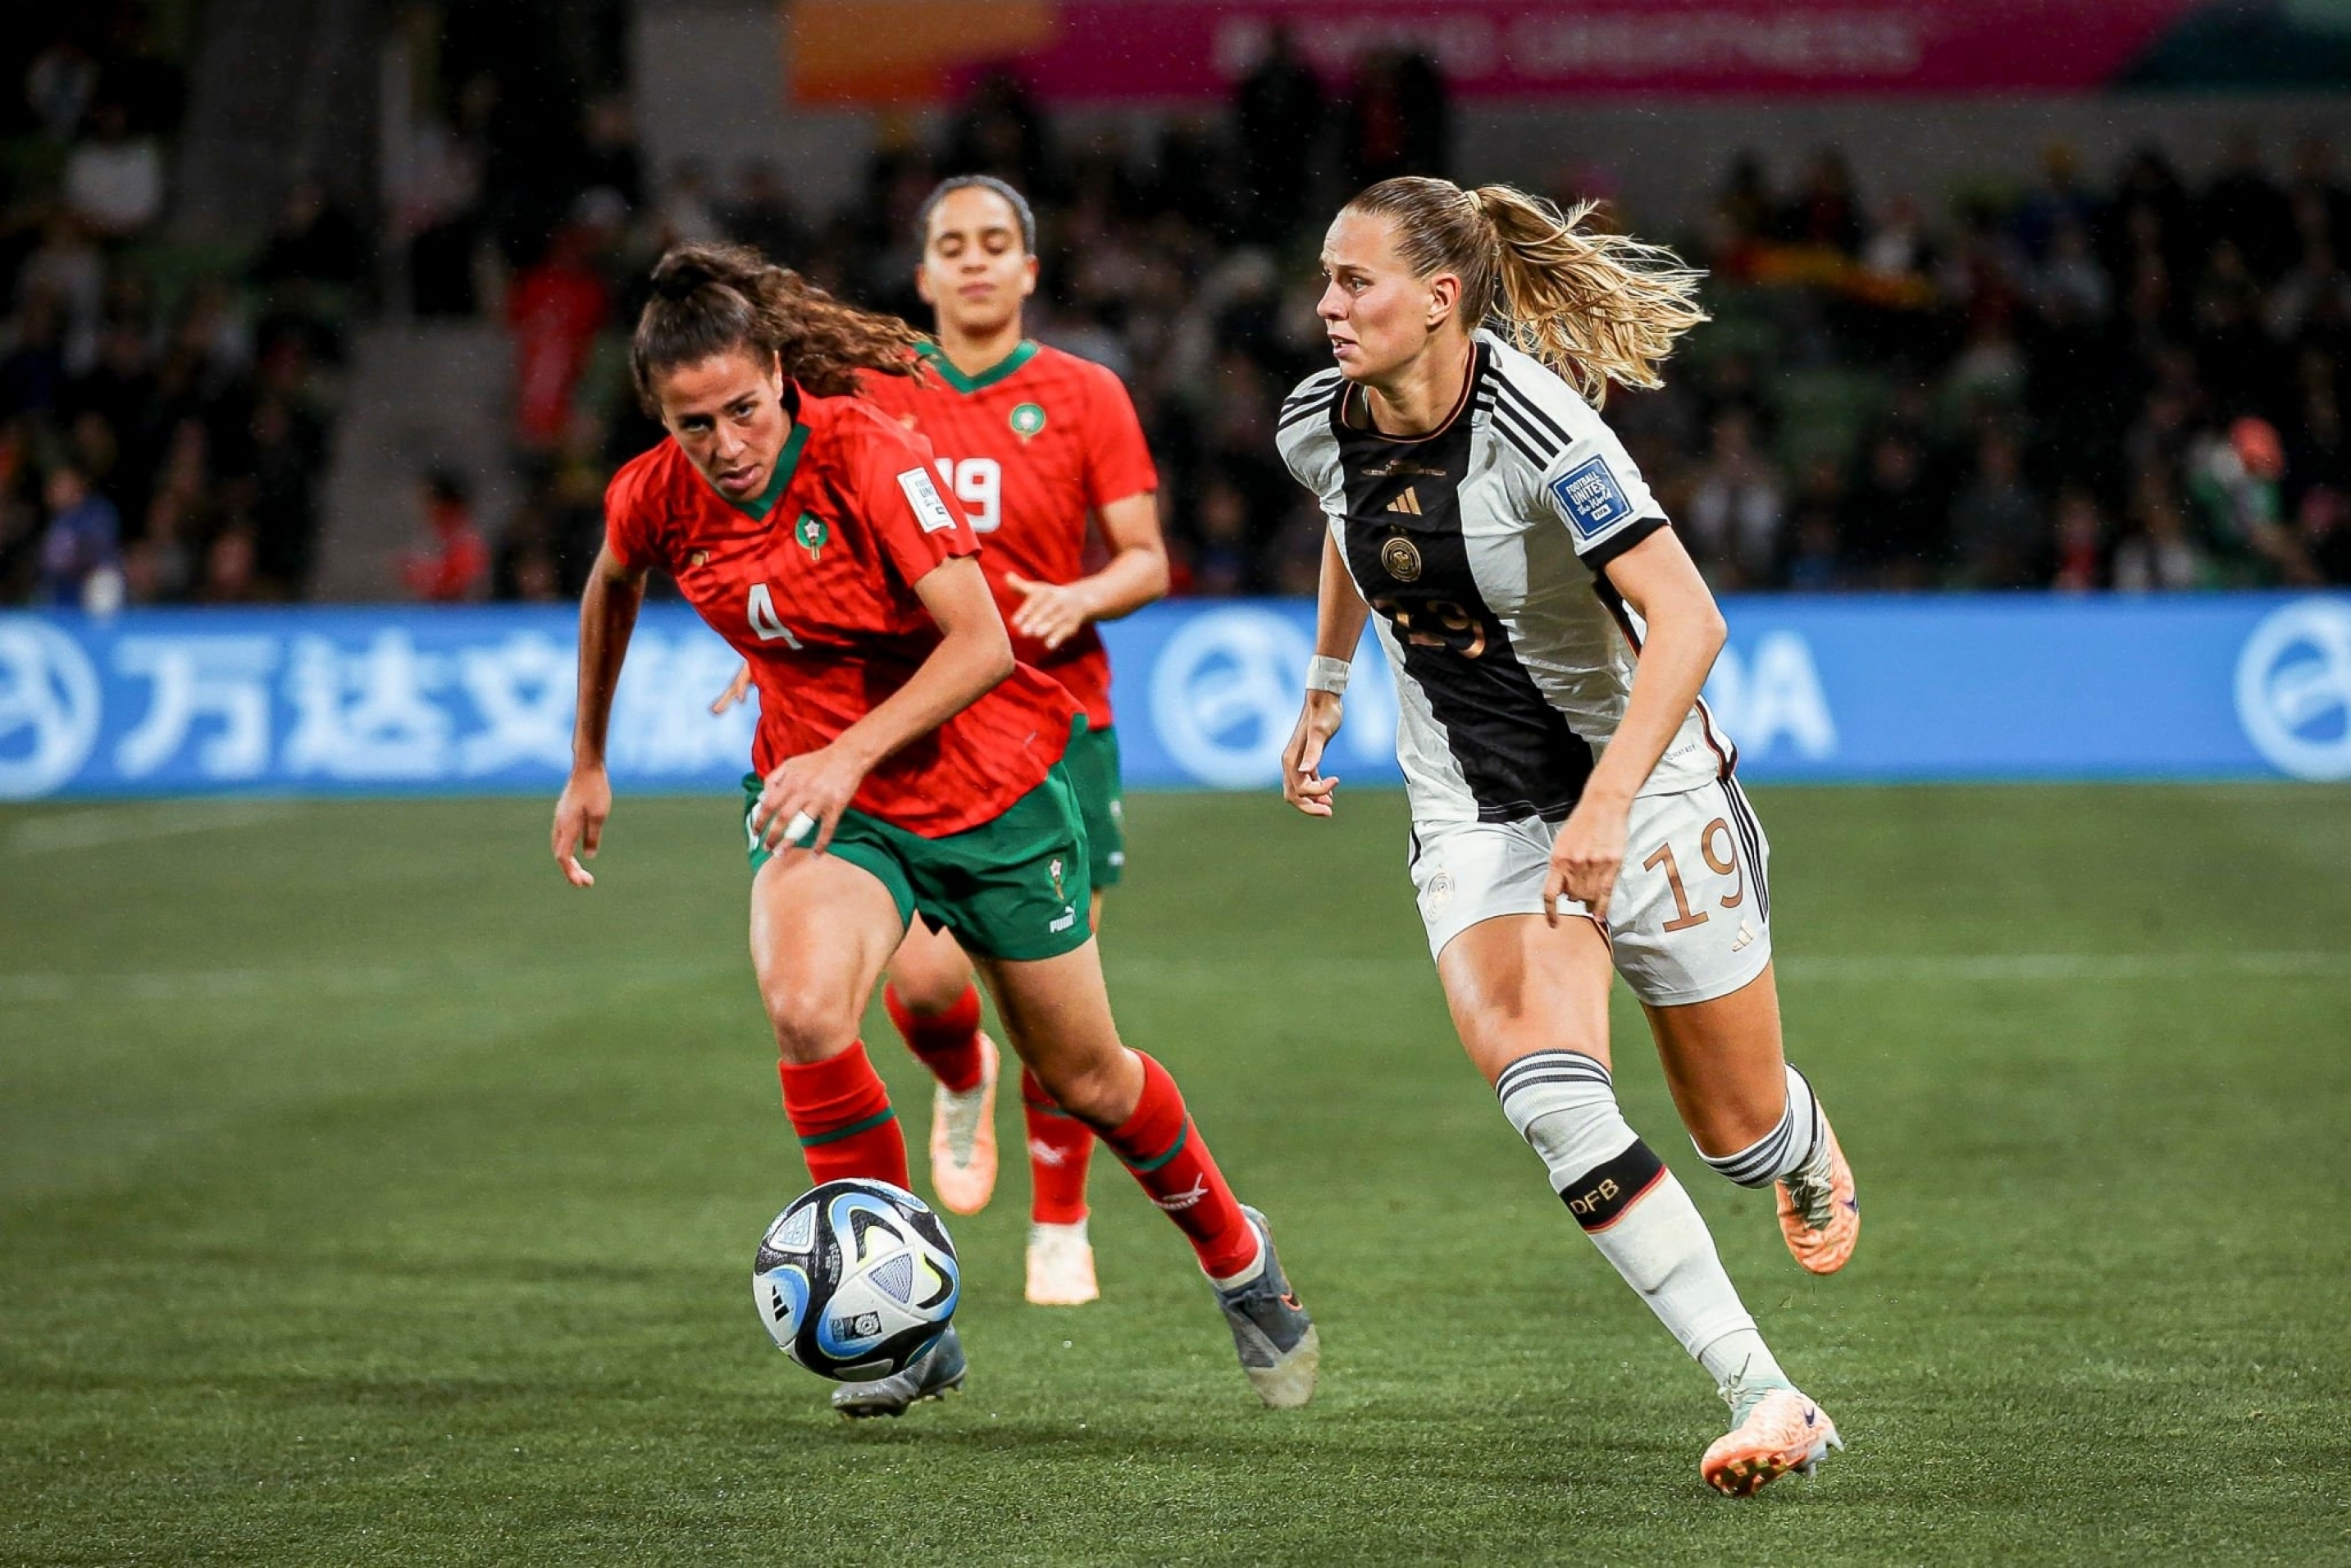 Mondial féminin 2023 / Maroc-Allemagne (0-6) : Les Allemandes étaient plus fortes !